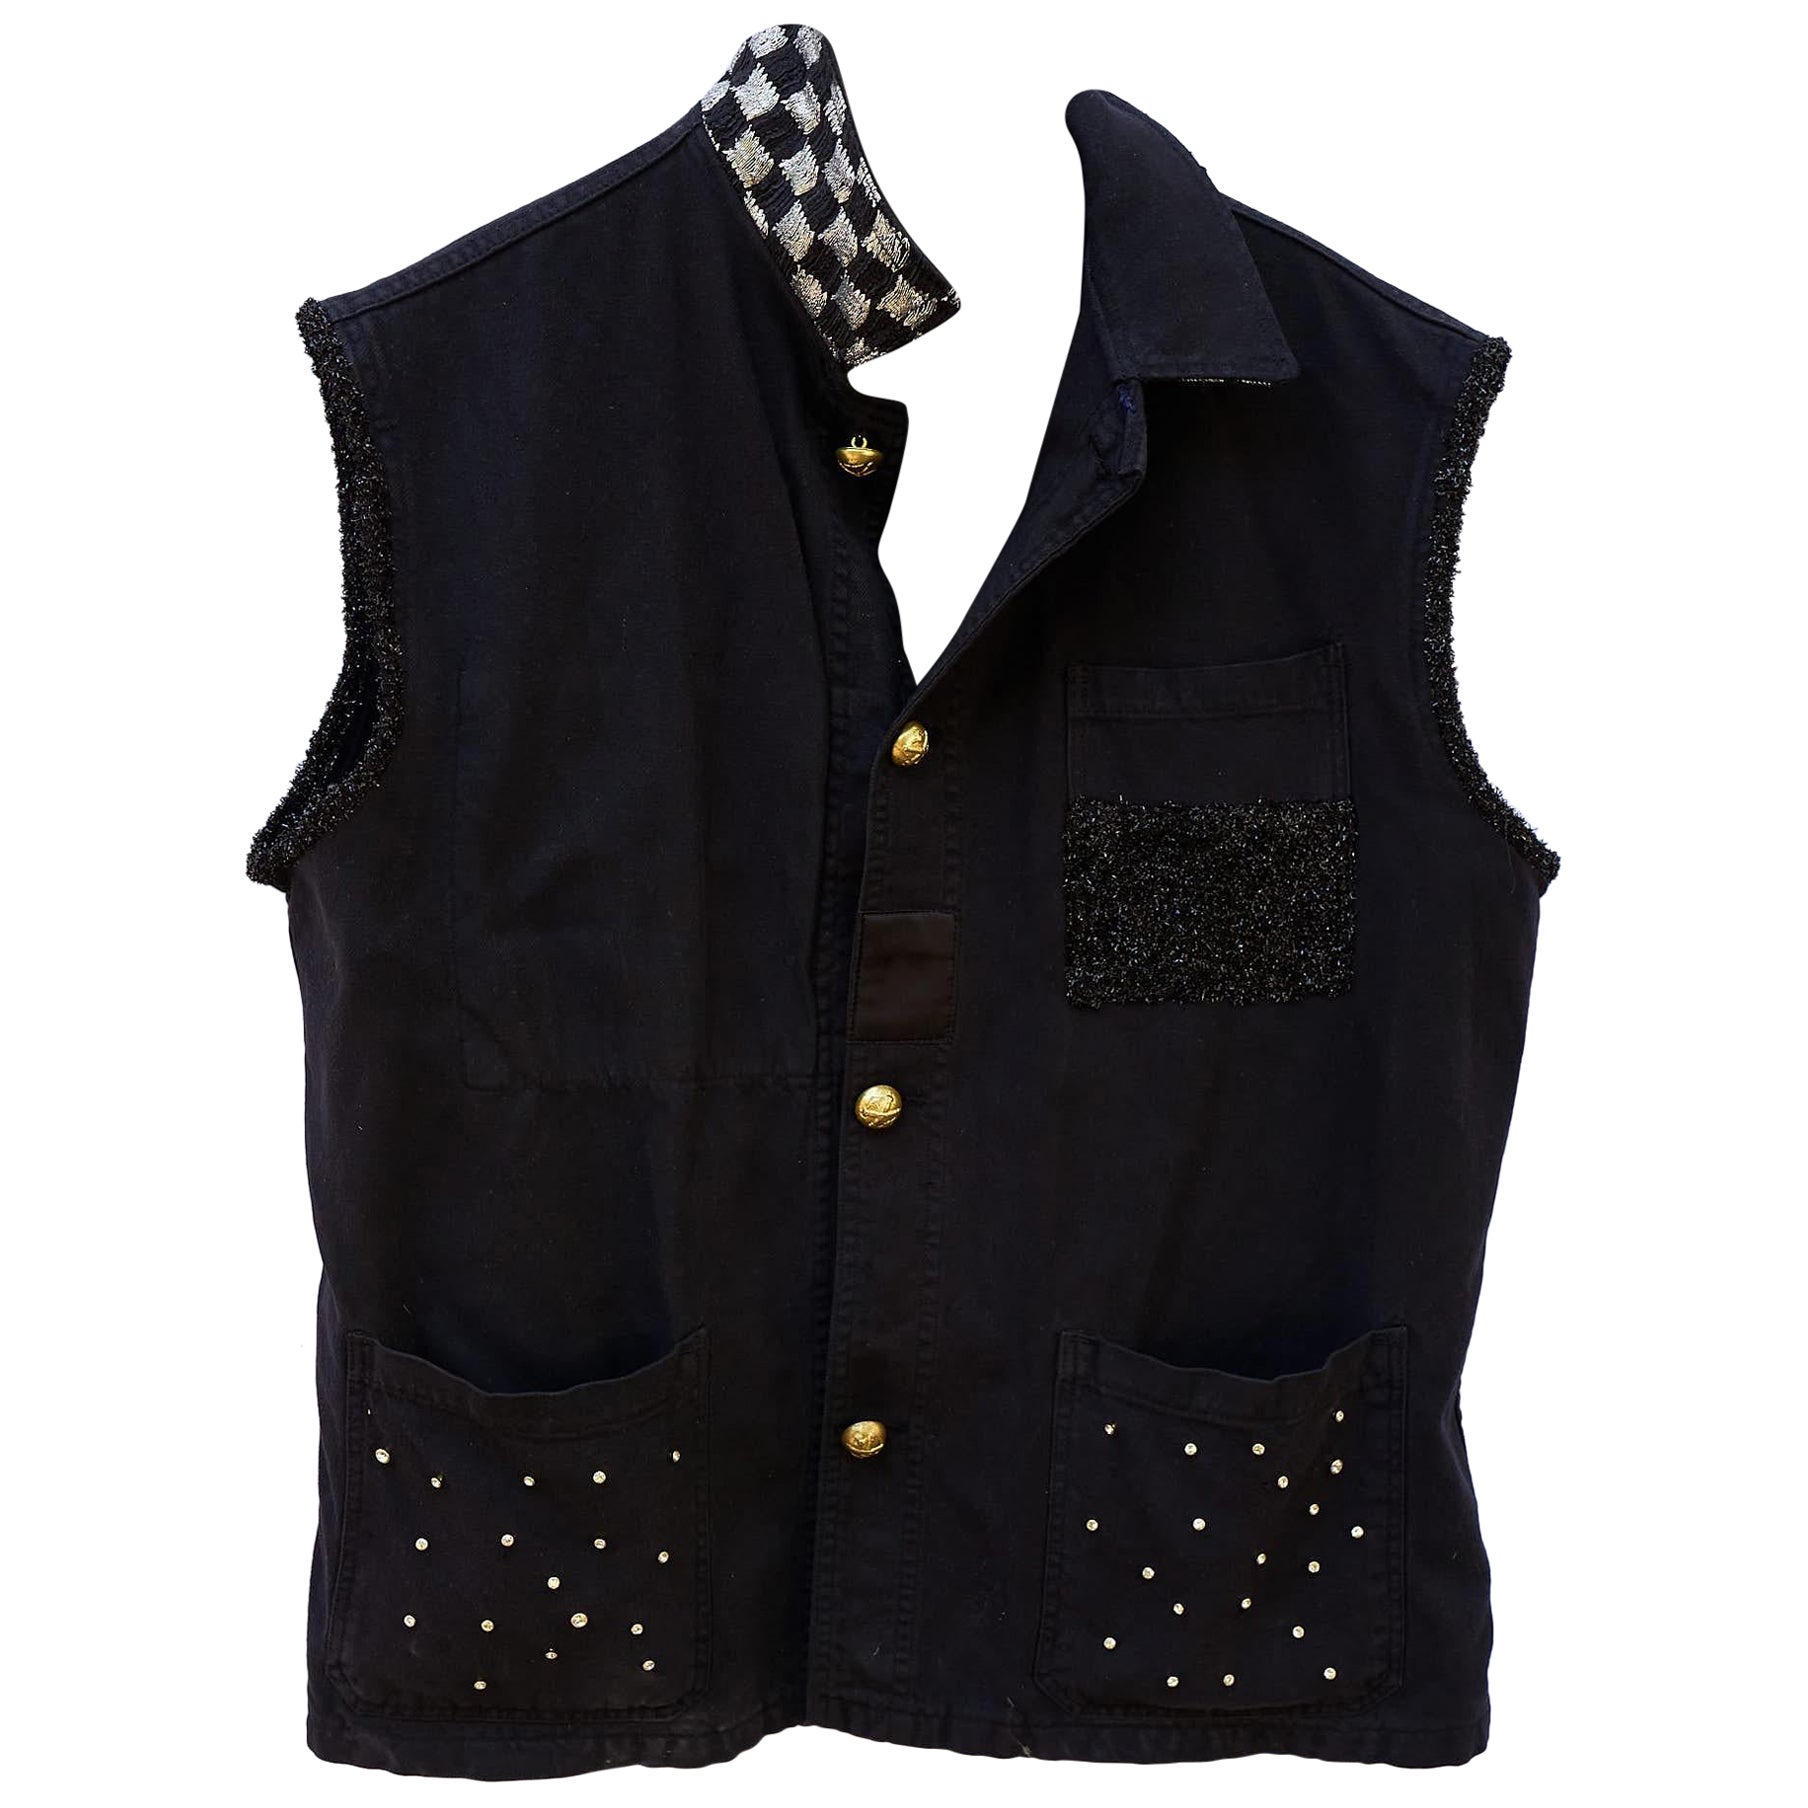 Sleeveless Jacket Vest Black Crystal Embellished Gold Buttons J Dauphin